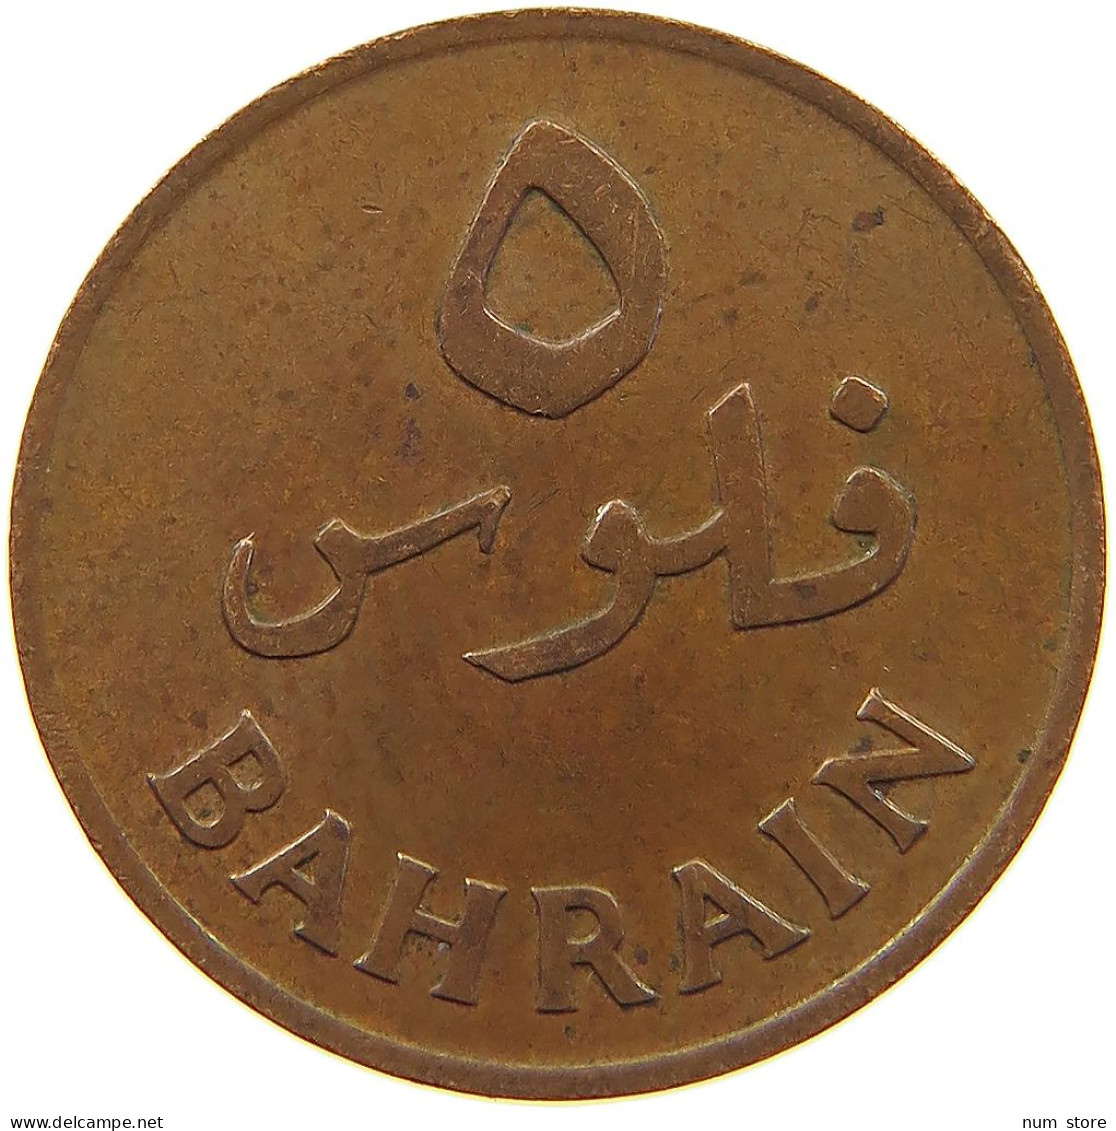 BAHRAIN 5 FILS 1965  #a050 0445 - Bahrain